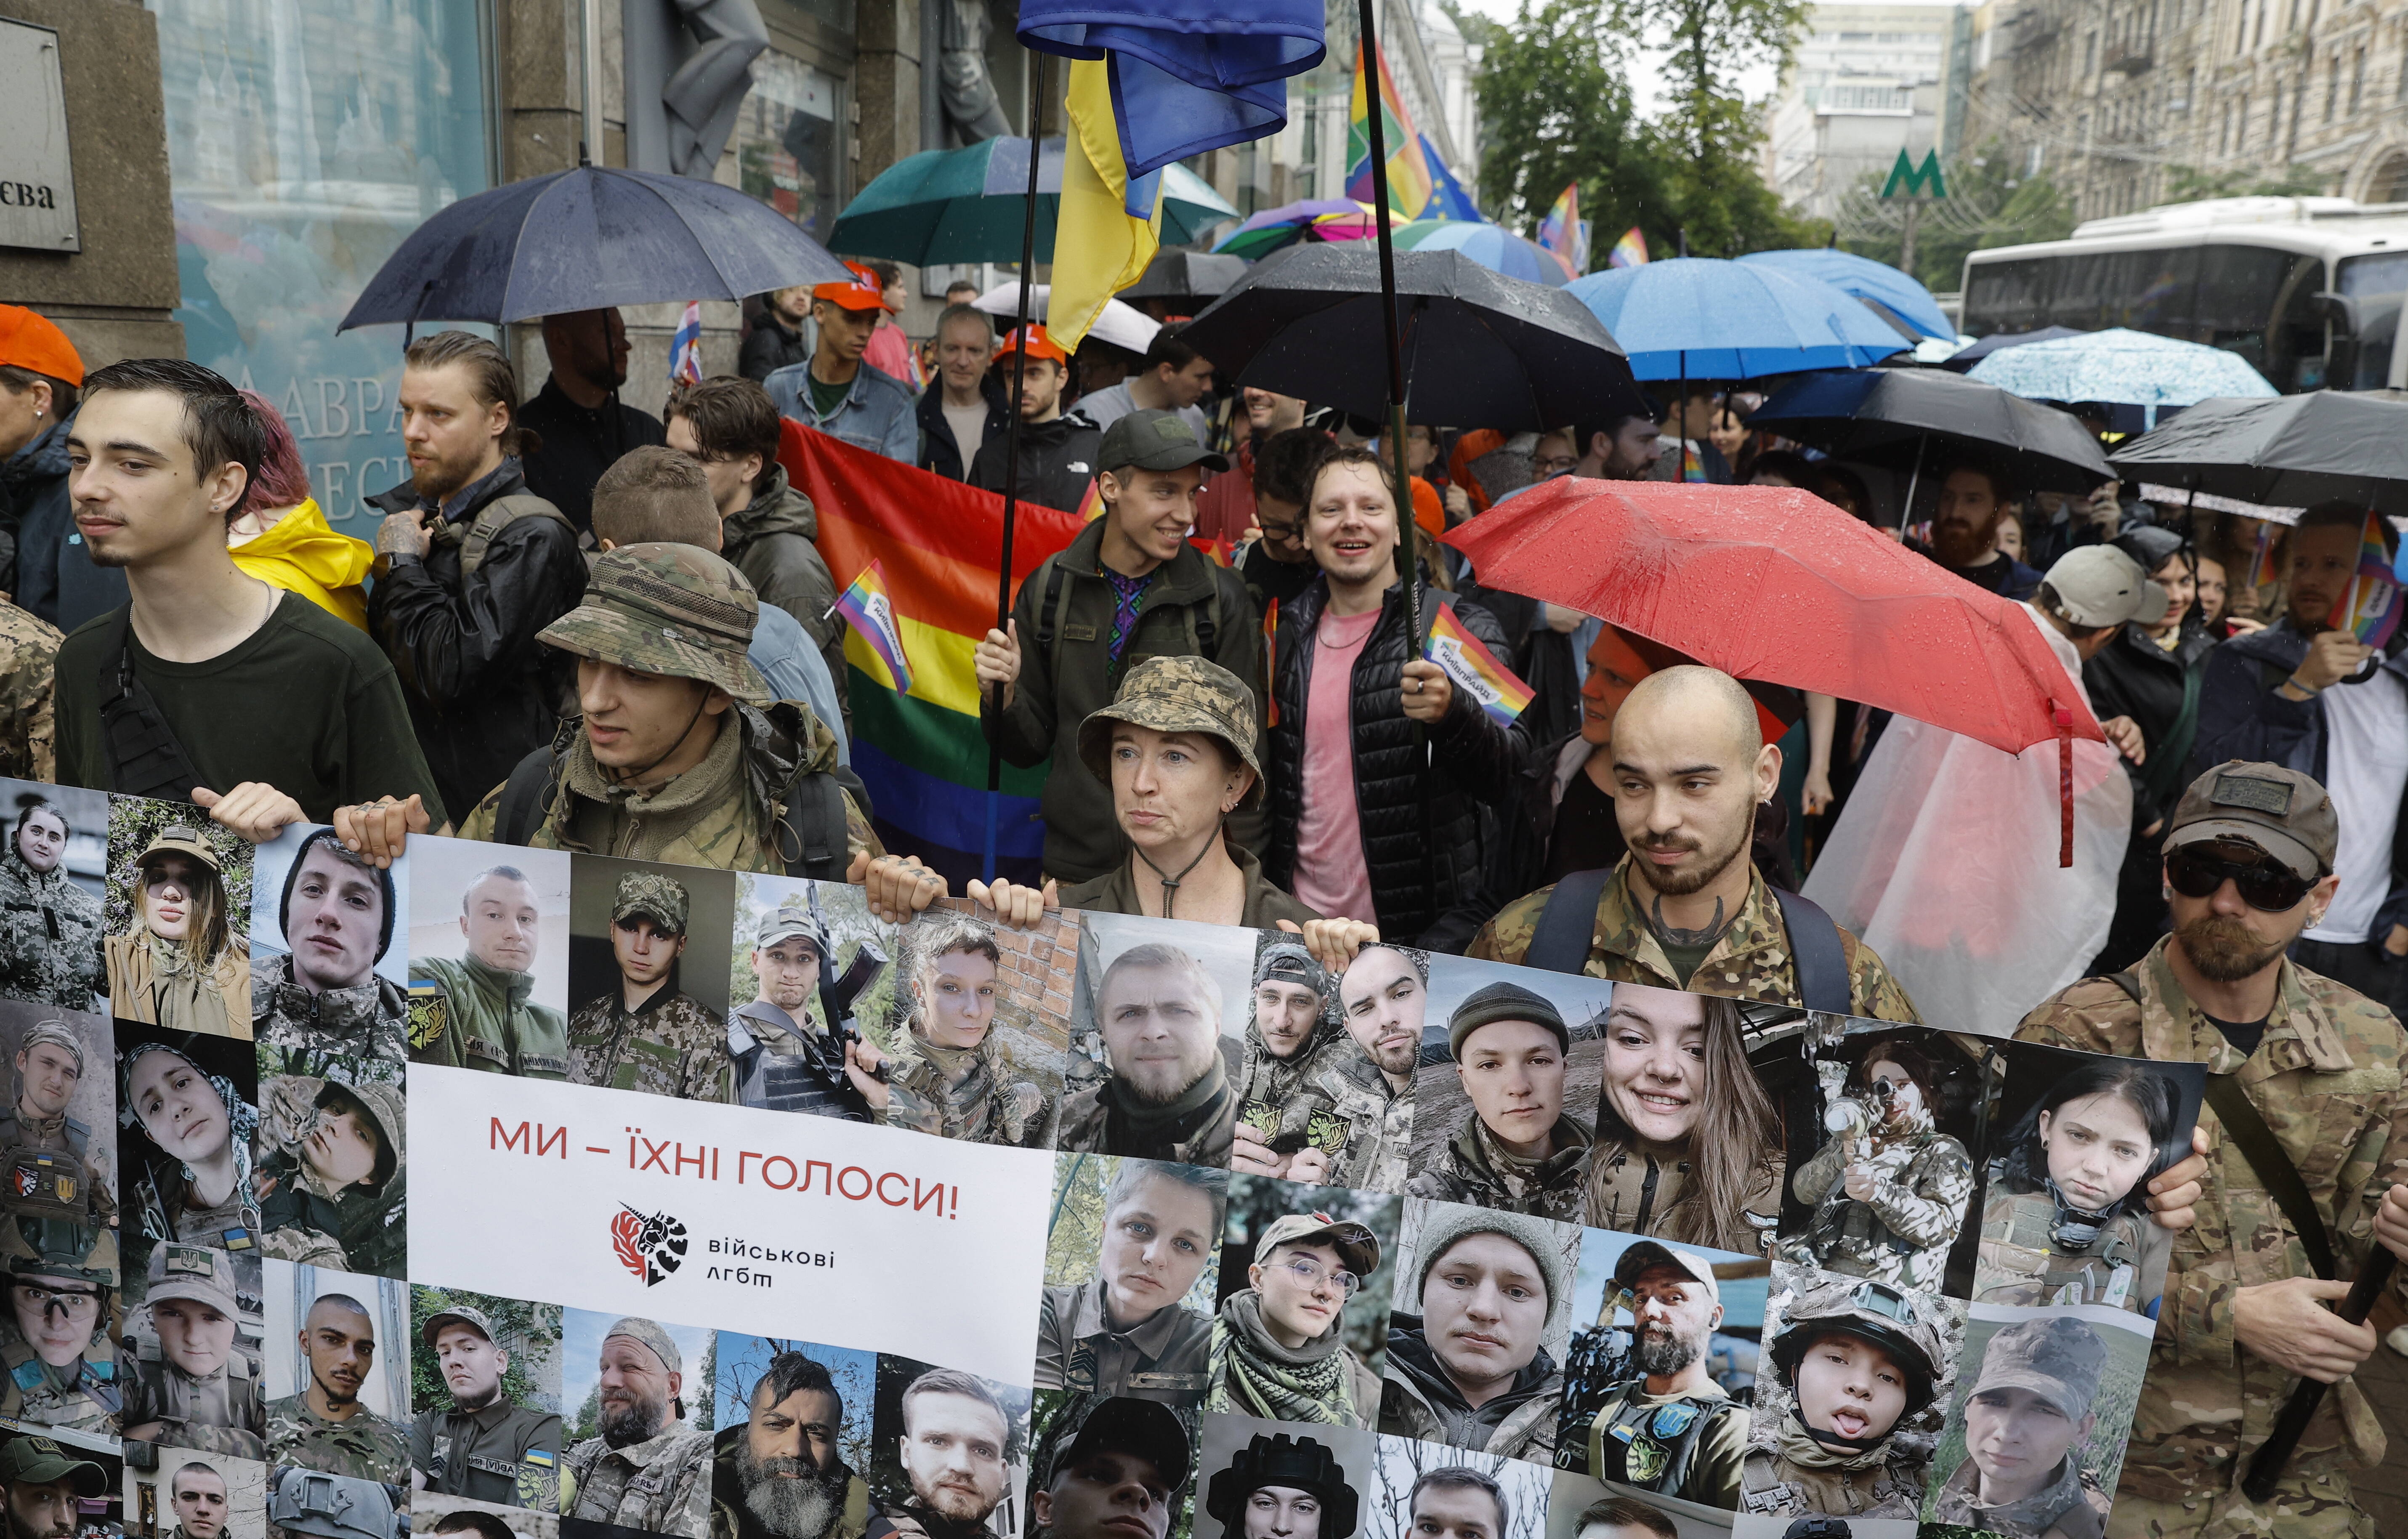 Вінничанка заявила про вихід із Національної спілки письменників після гомофобних заяв спілки